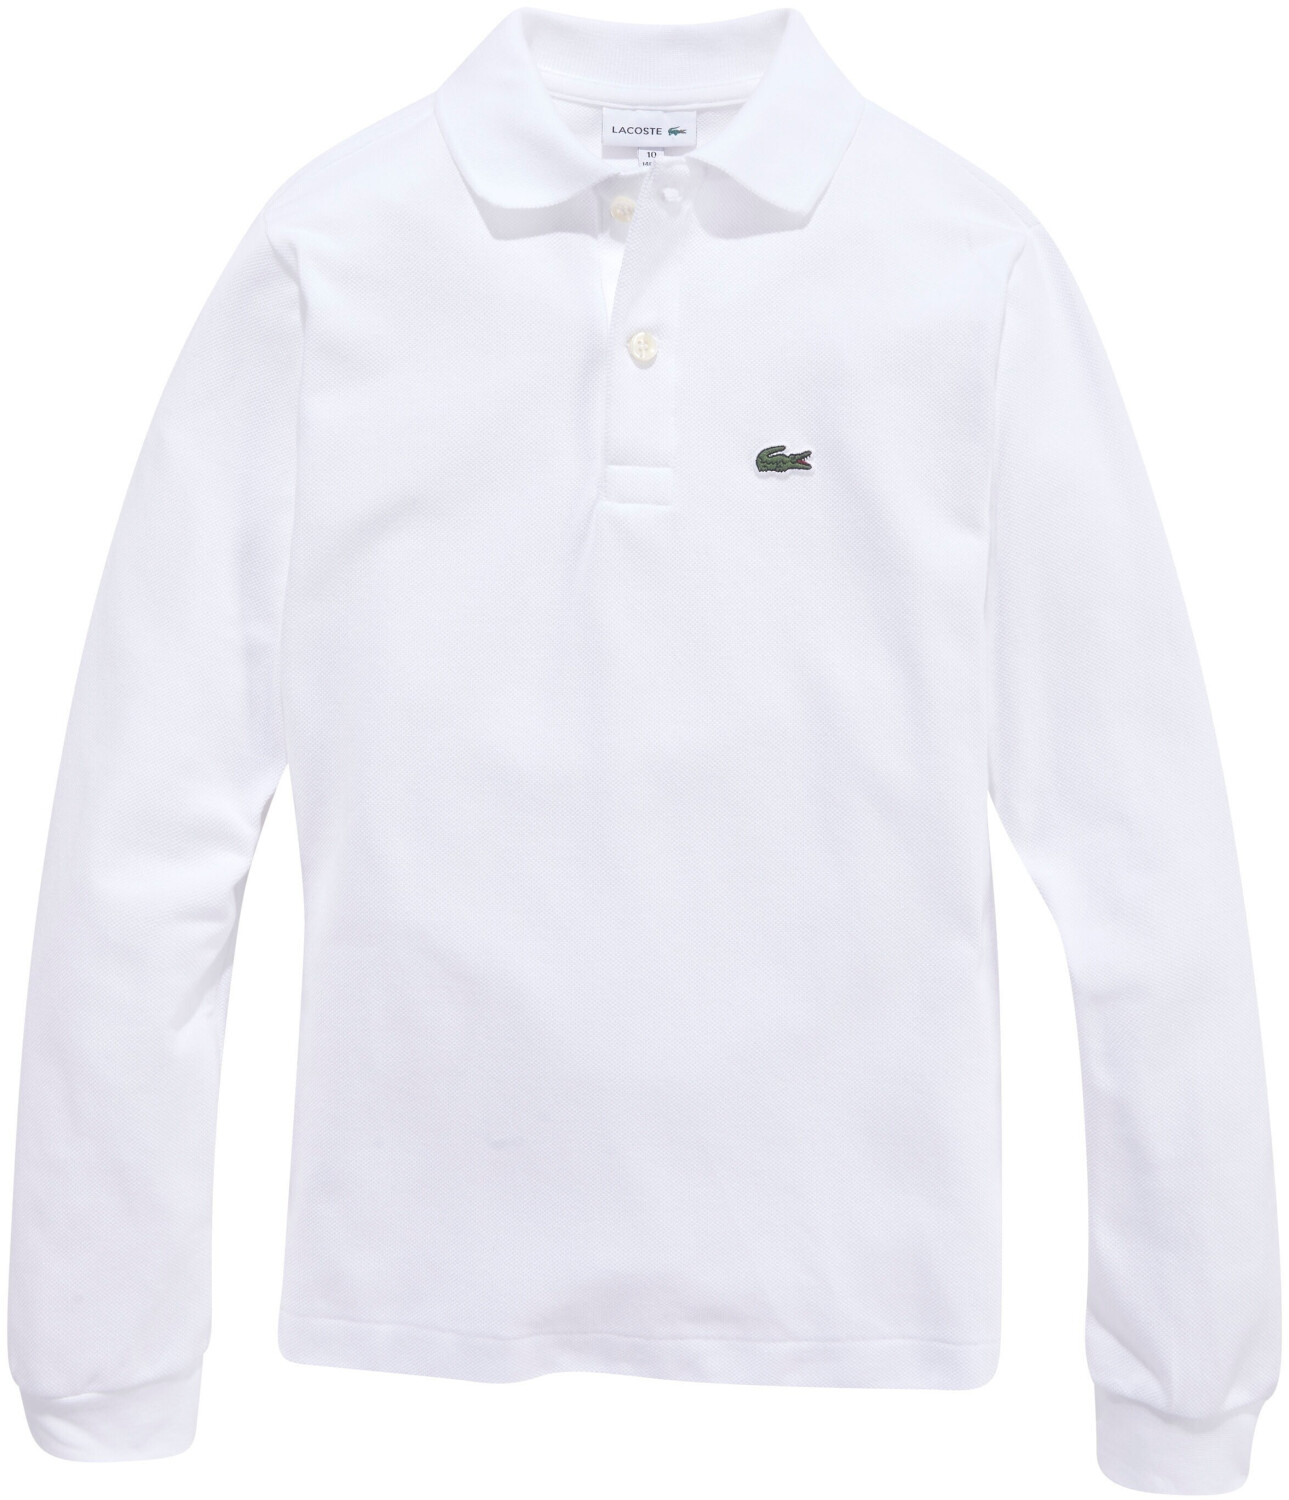 ab (PJ8915-001) | Preisvergleich Lacoste 38,50 Poloshirt € white bei